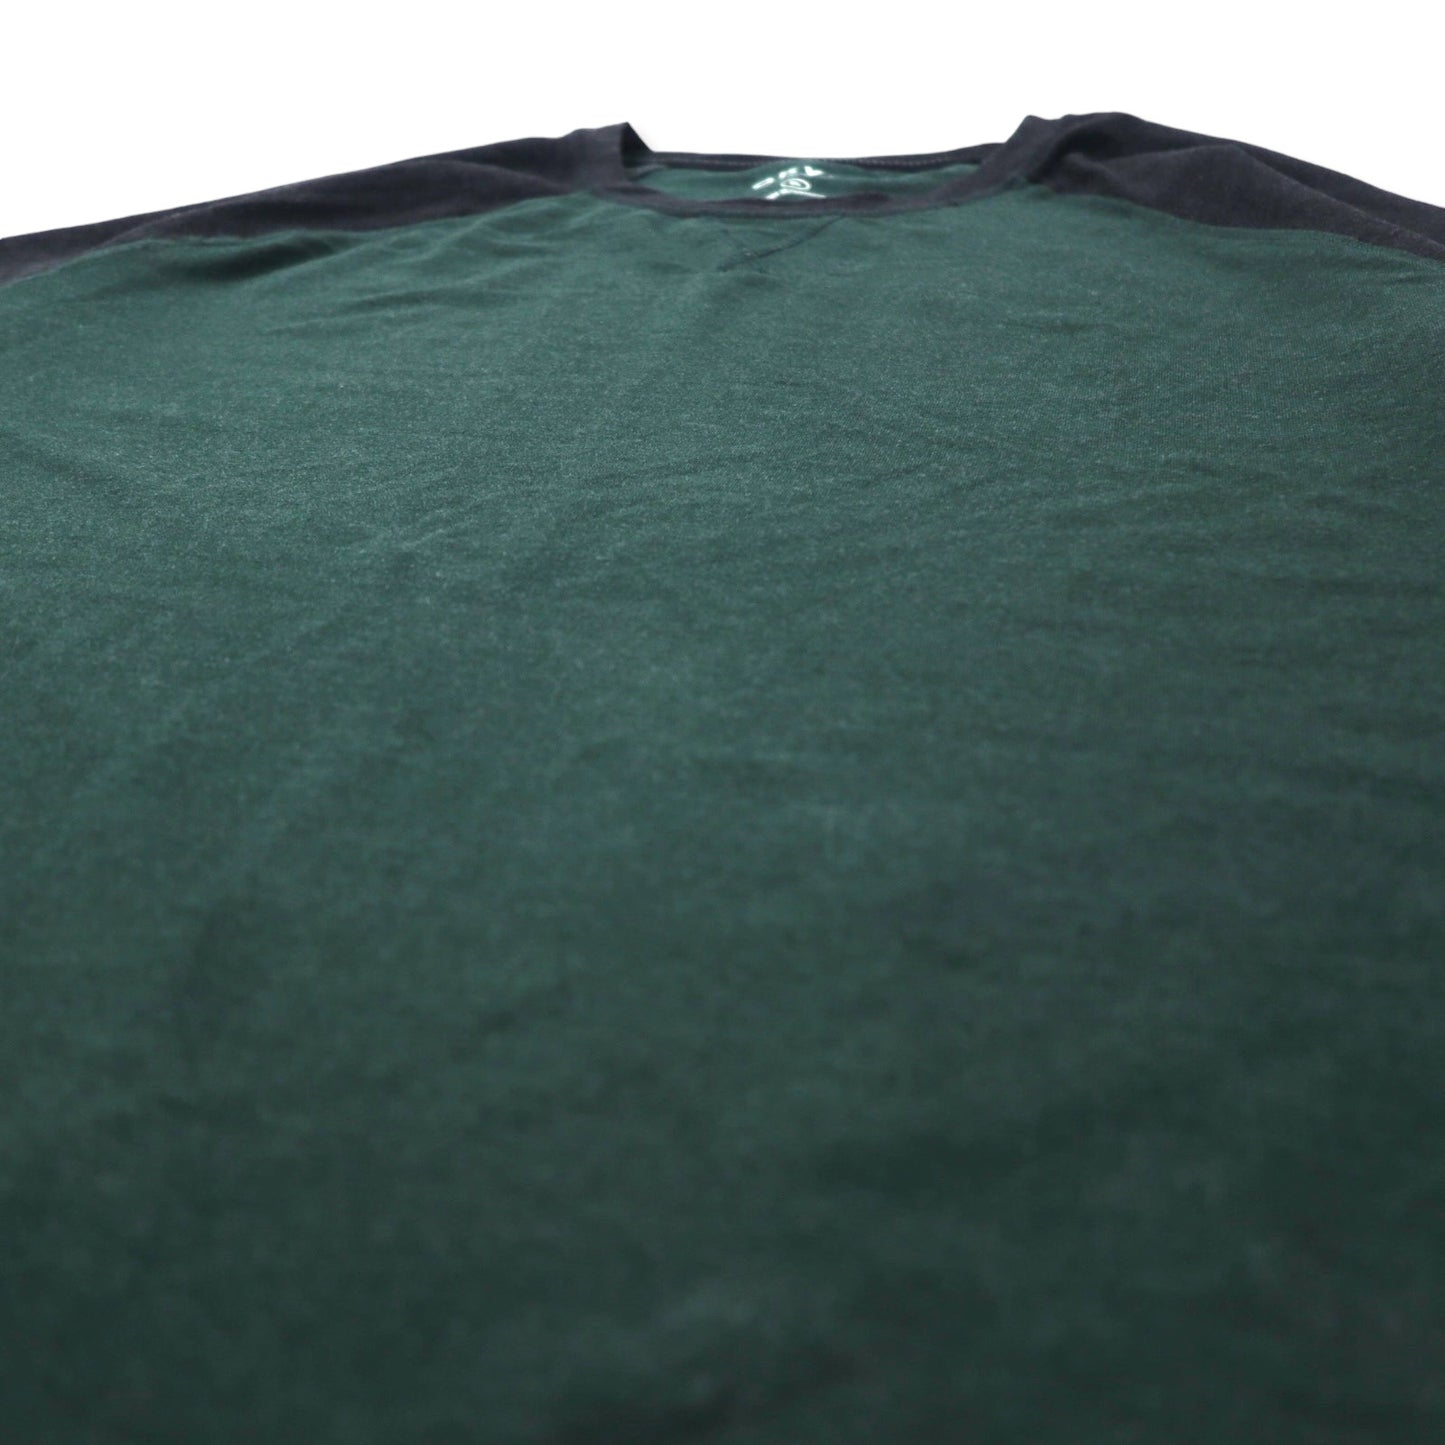 ORVIS ロングスリーブ ラグラン Tシャツ ロンT XL グレー レーヨン ポリエステル ビッグサイズ